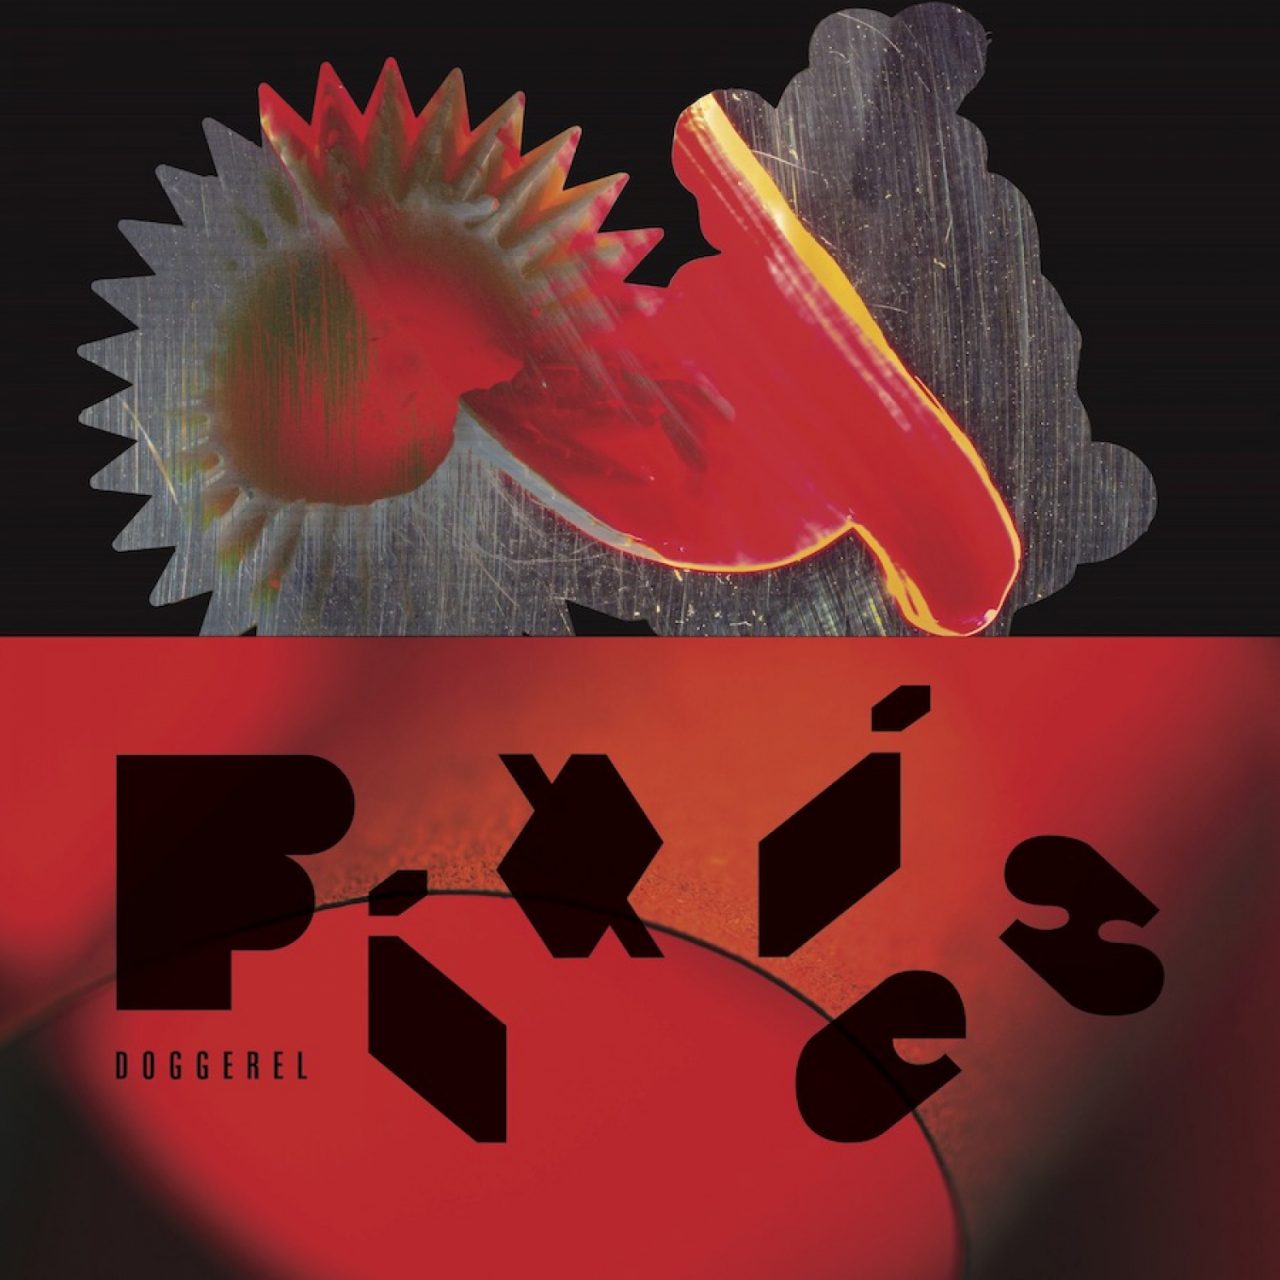 Das Albumcover "Doggerel" von den Pixies ist zweigeteilt. Unten ist ein roter Hintergrund mit Band- und Albumnamen zu sehen. Obendrüber ist ein schwarzer Hintergrund mit einem Fantasiegebilde.